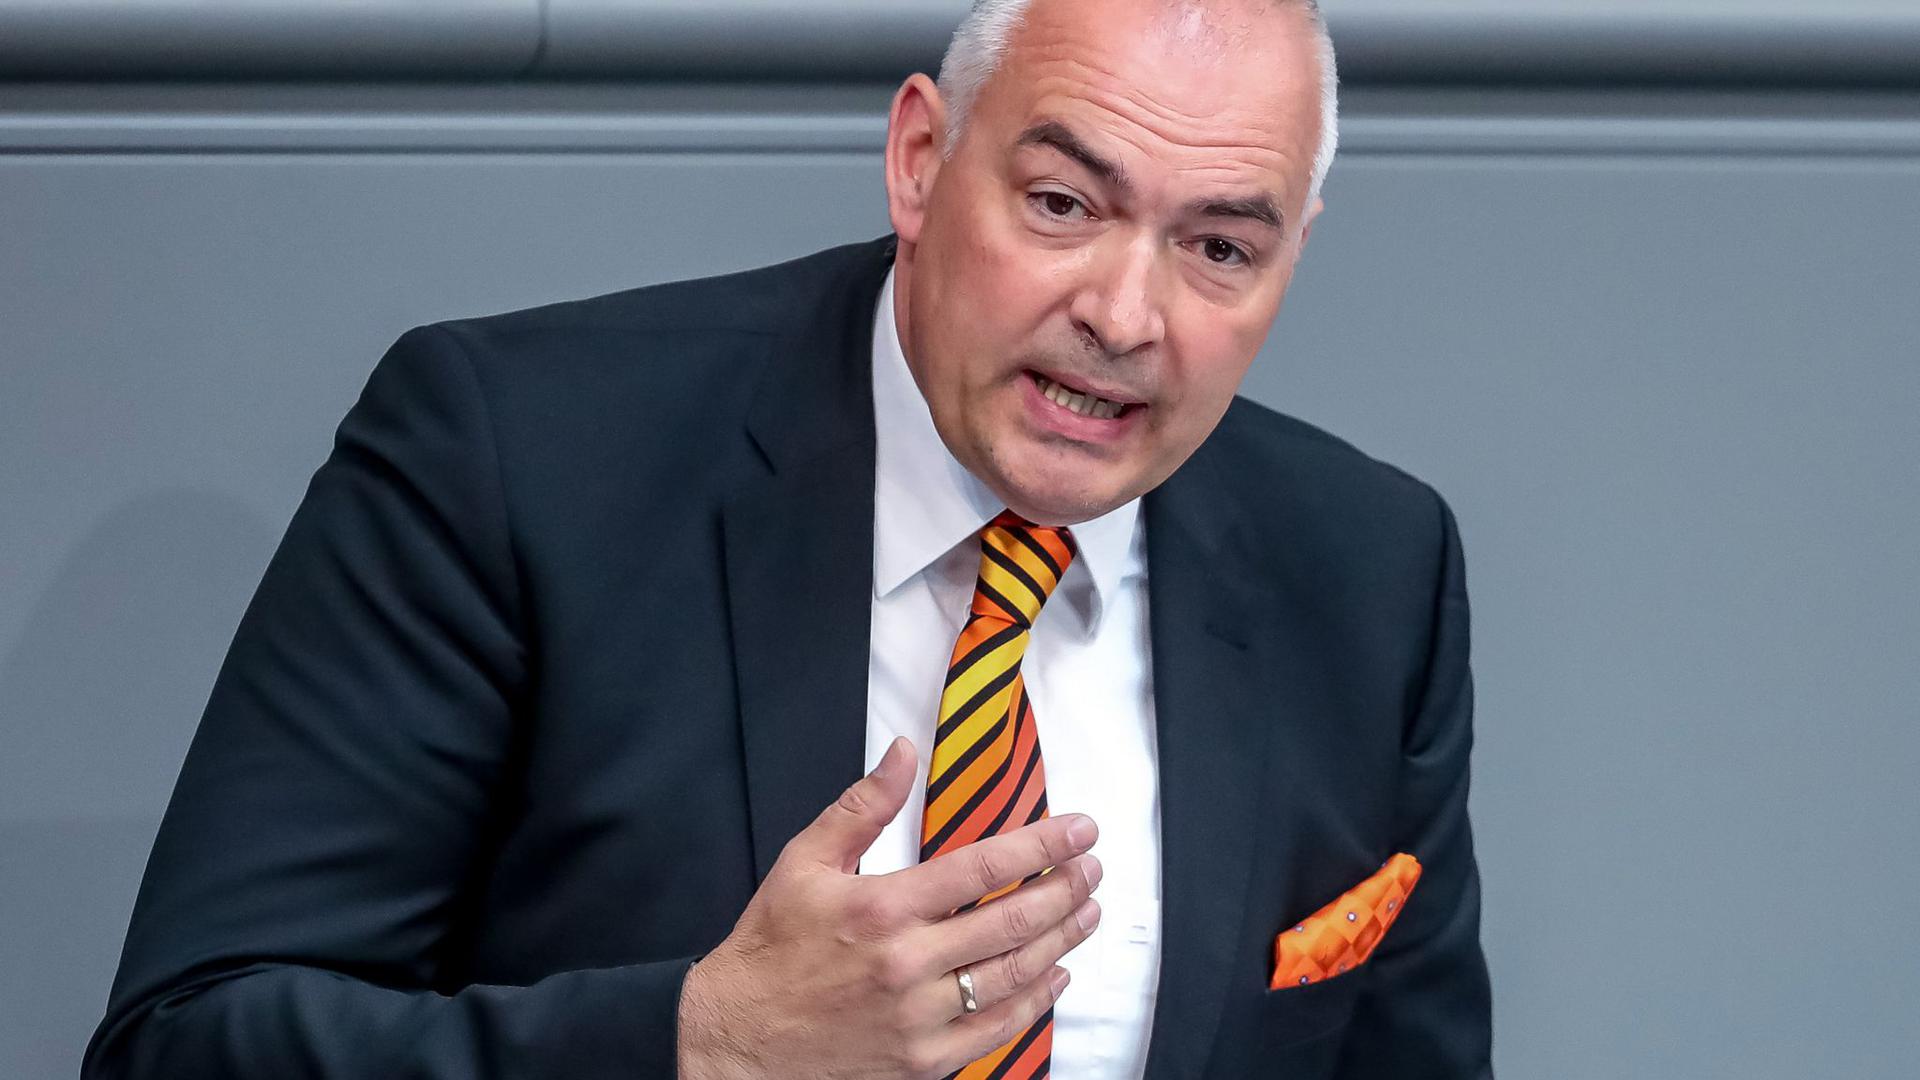 Gegen den Karlsruher Bundestagsabgeordneten Axel E. Fischer wird wegen des Verdachts der Bestechlichkeit ermittelt. Der CDU-Politiker nennt die Vorwürfe „haltlos“.